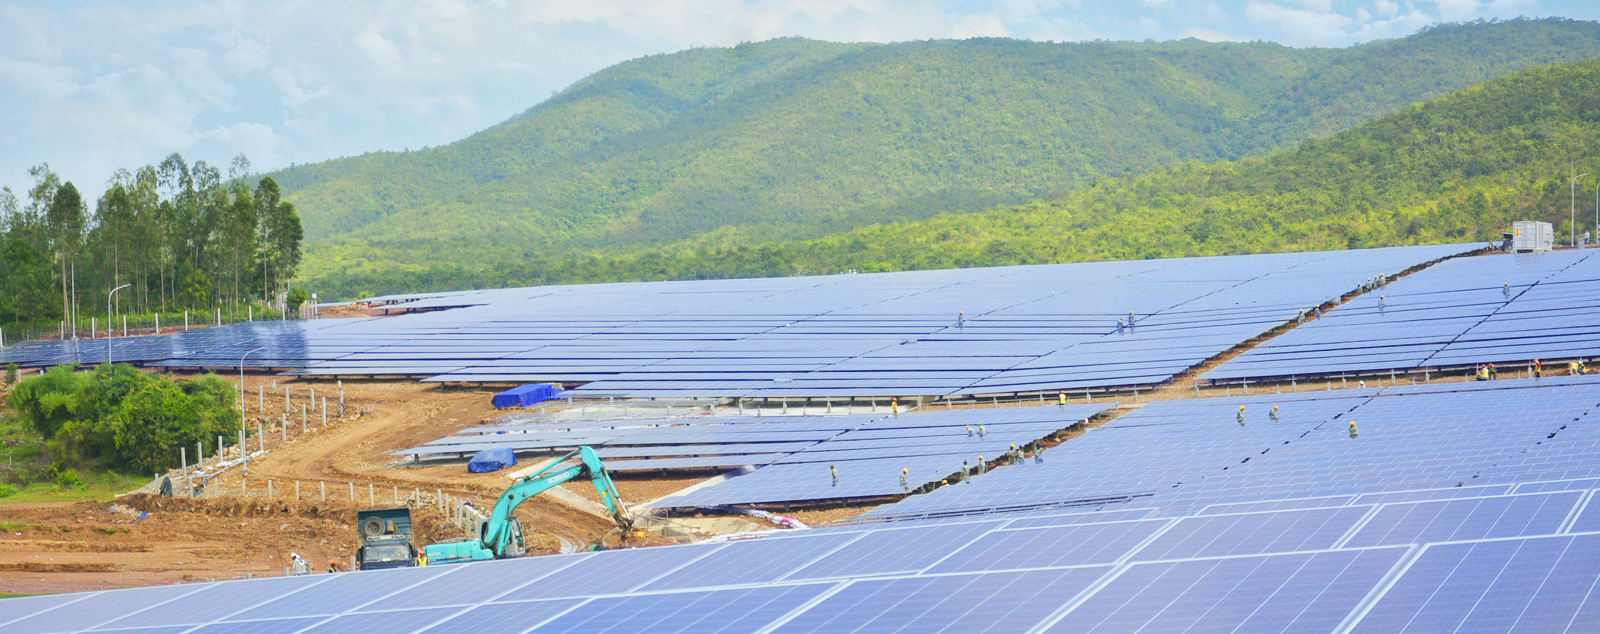 Hình ảnh lắp đặt pin năng lượng mặt trời solar farm